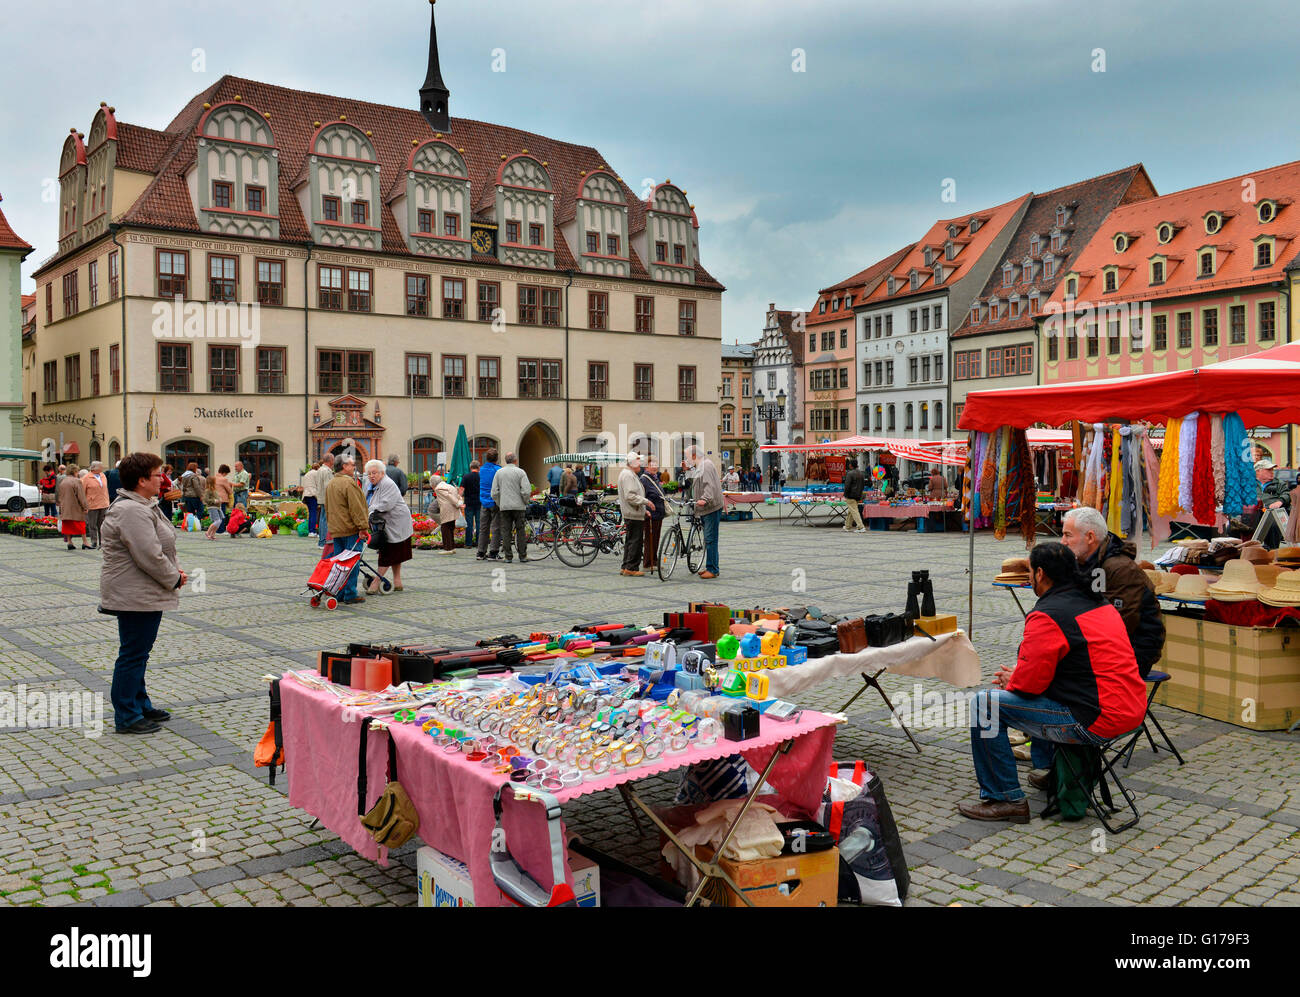 Wochenmarkt, Marktplatz, Naumburg, Sachsen-Anhalt, Deutschland Foto Stock